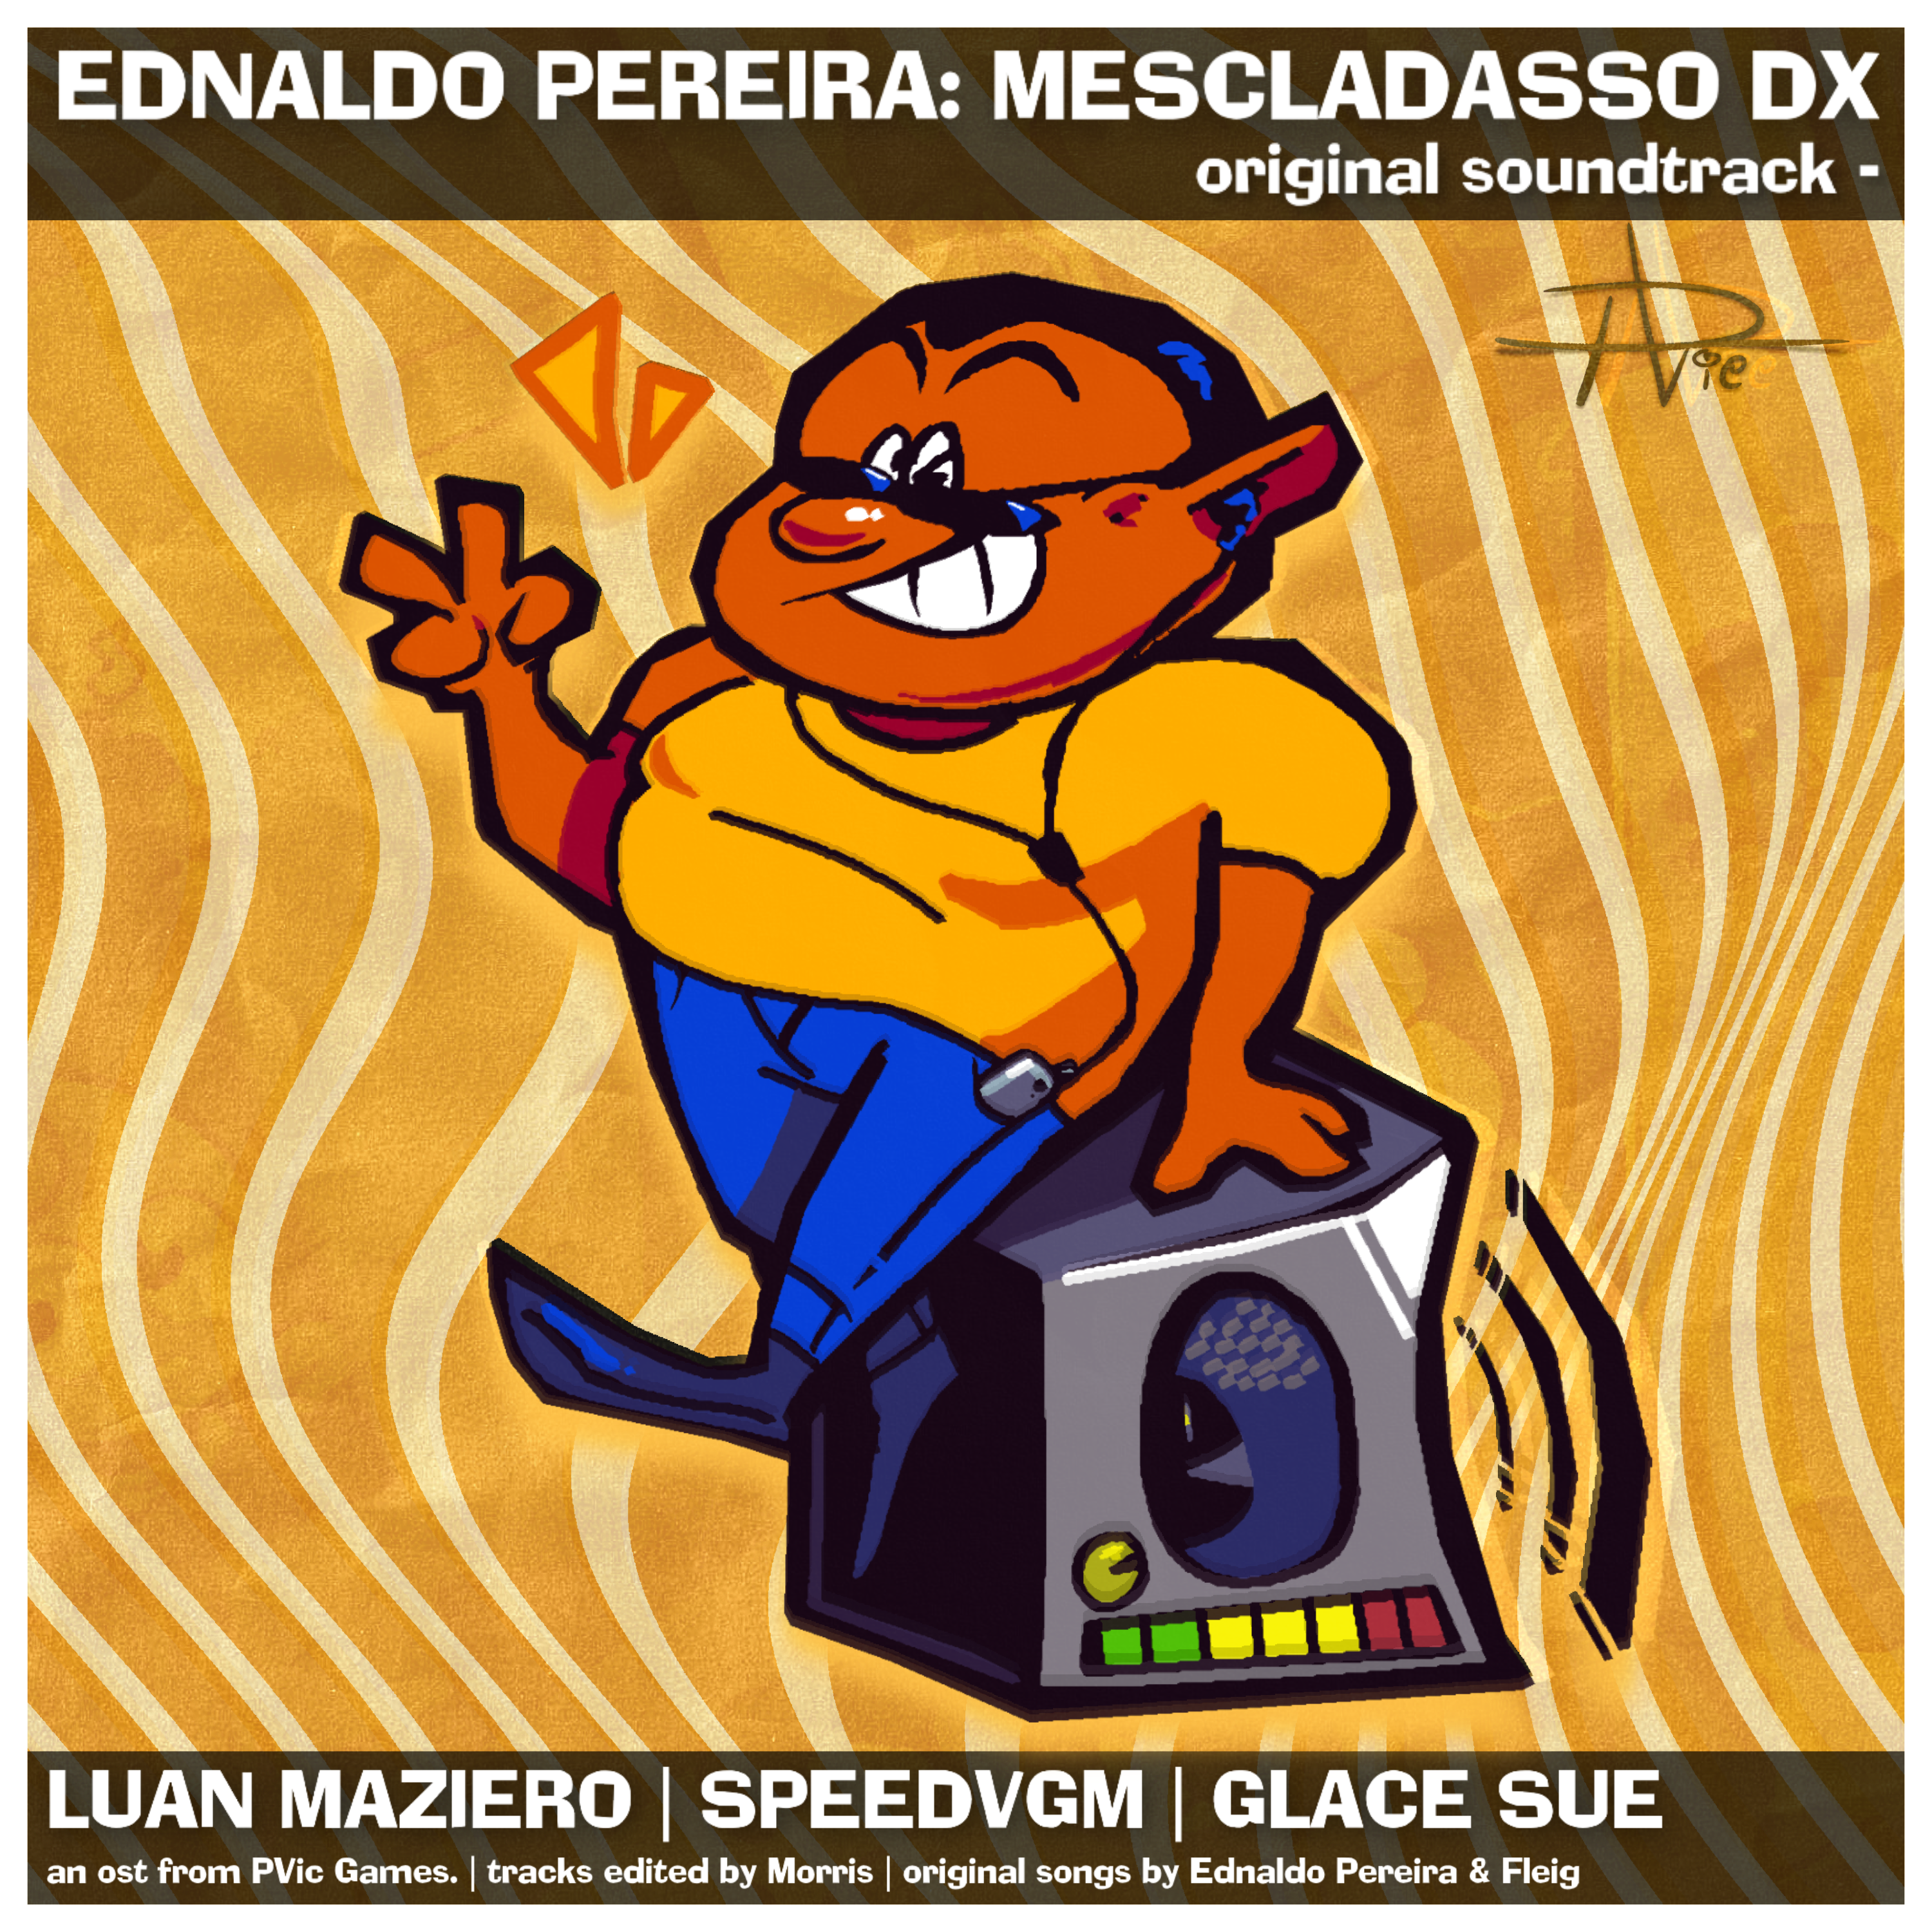 Ednaldo Pereira: Mescladasso DX OST